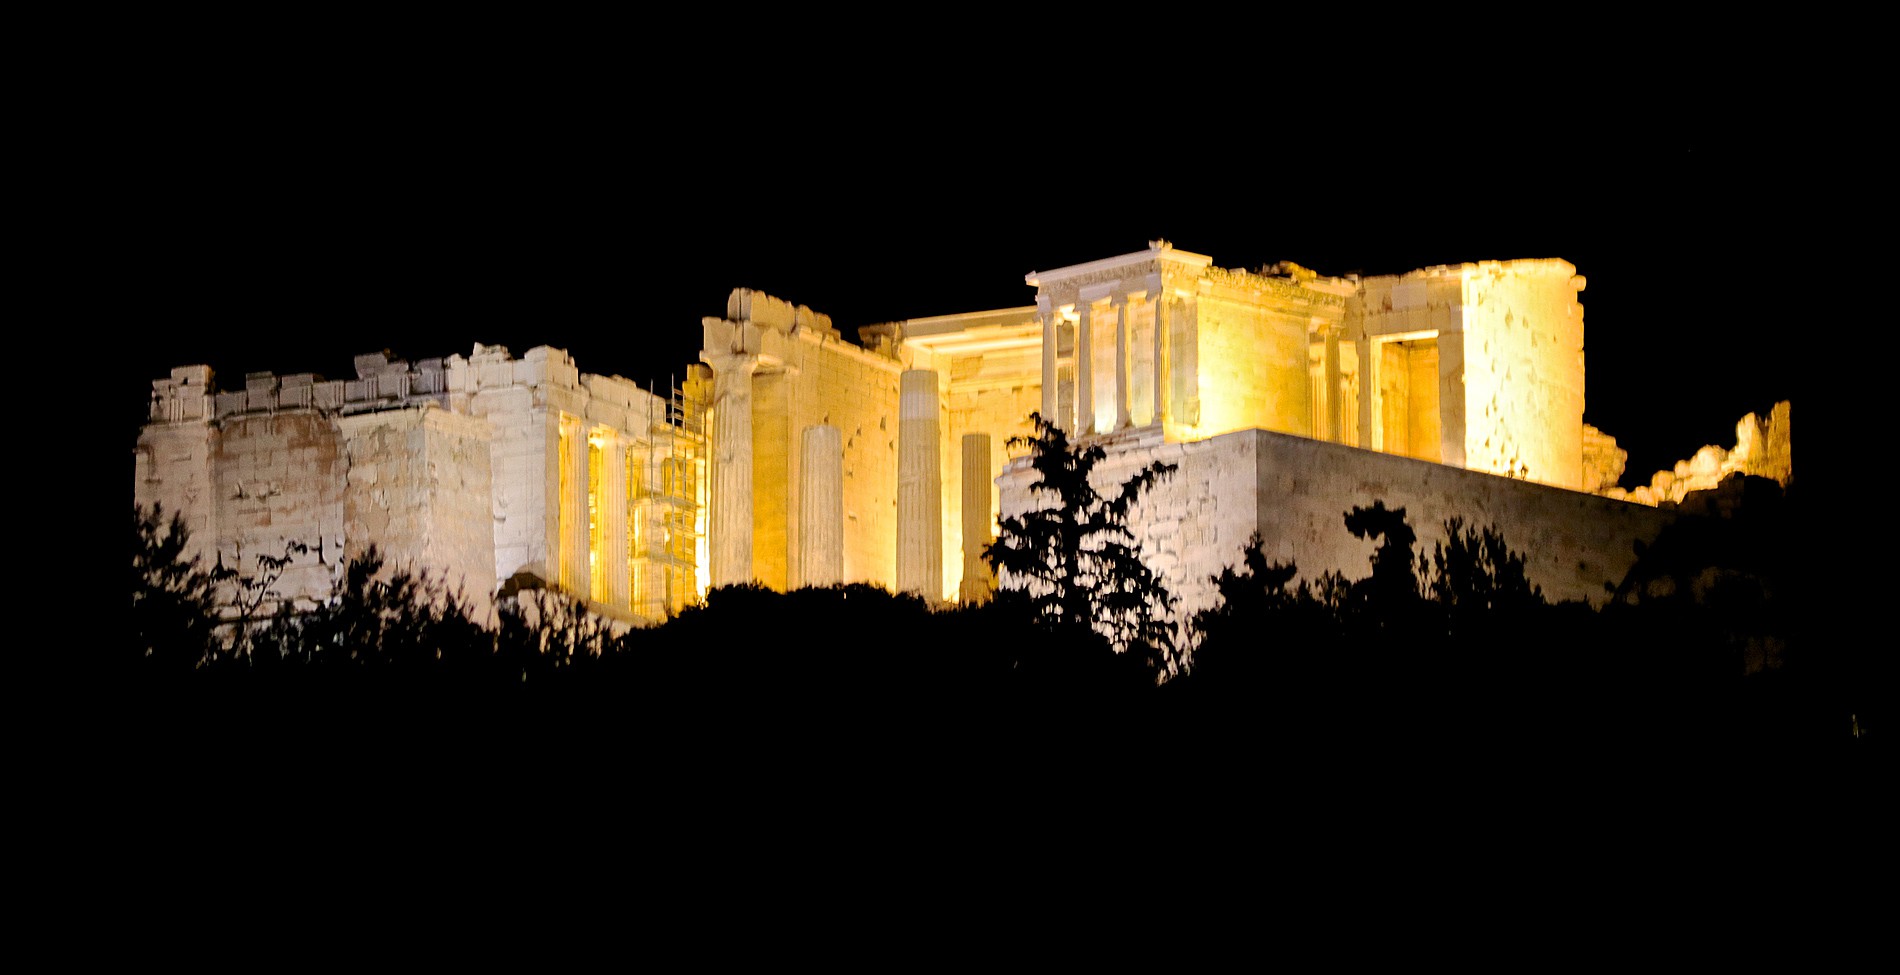 Σβήνουν τα φώτα στα μνημεία της Αθήνας;